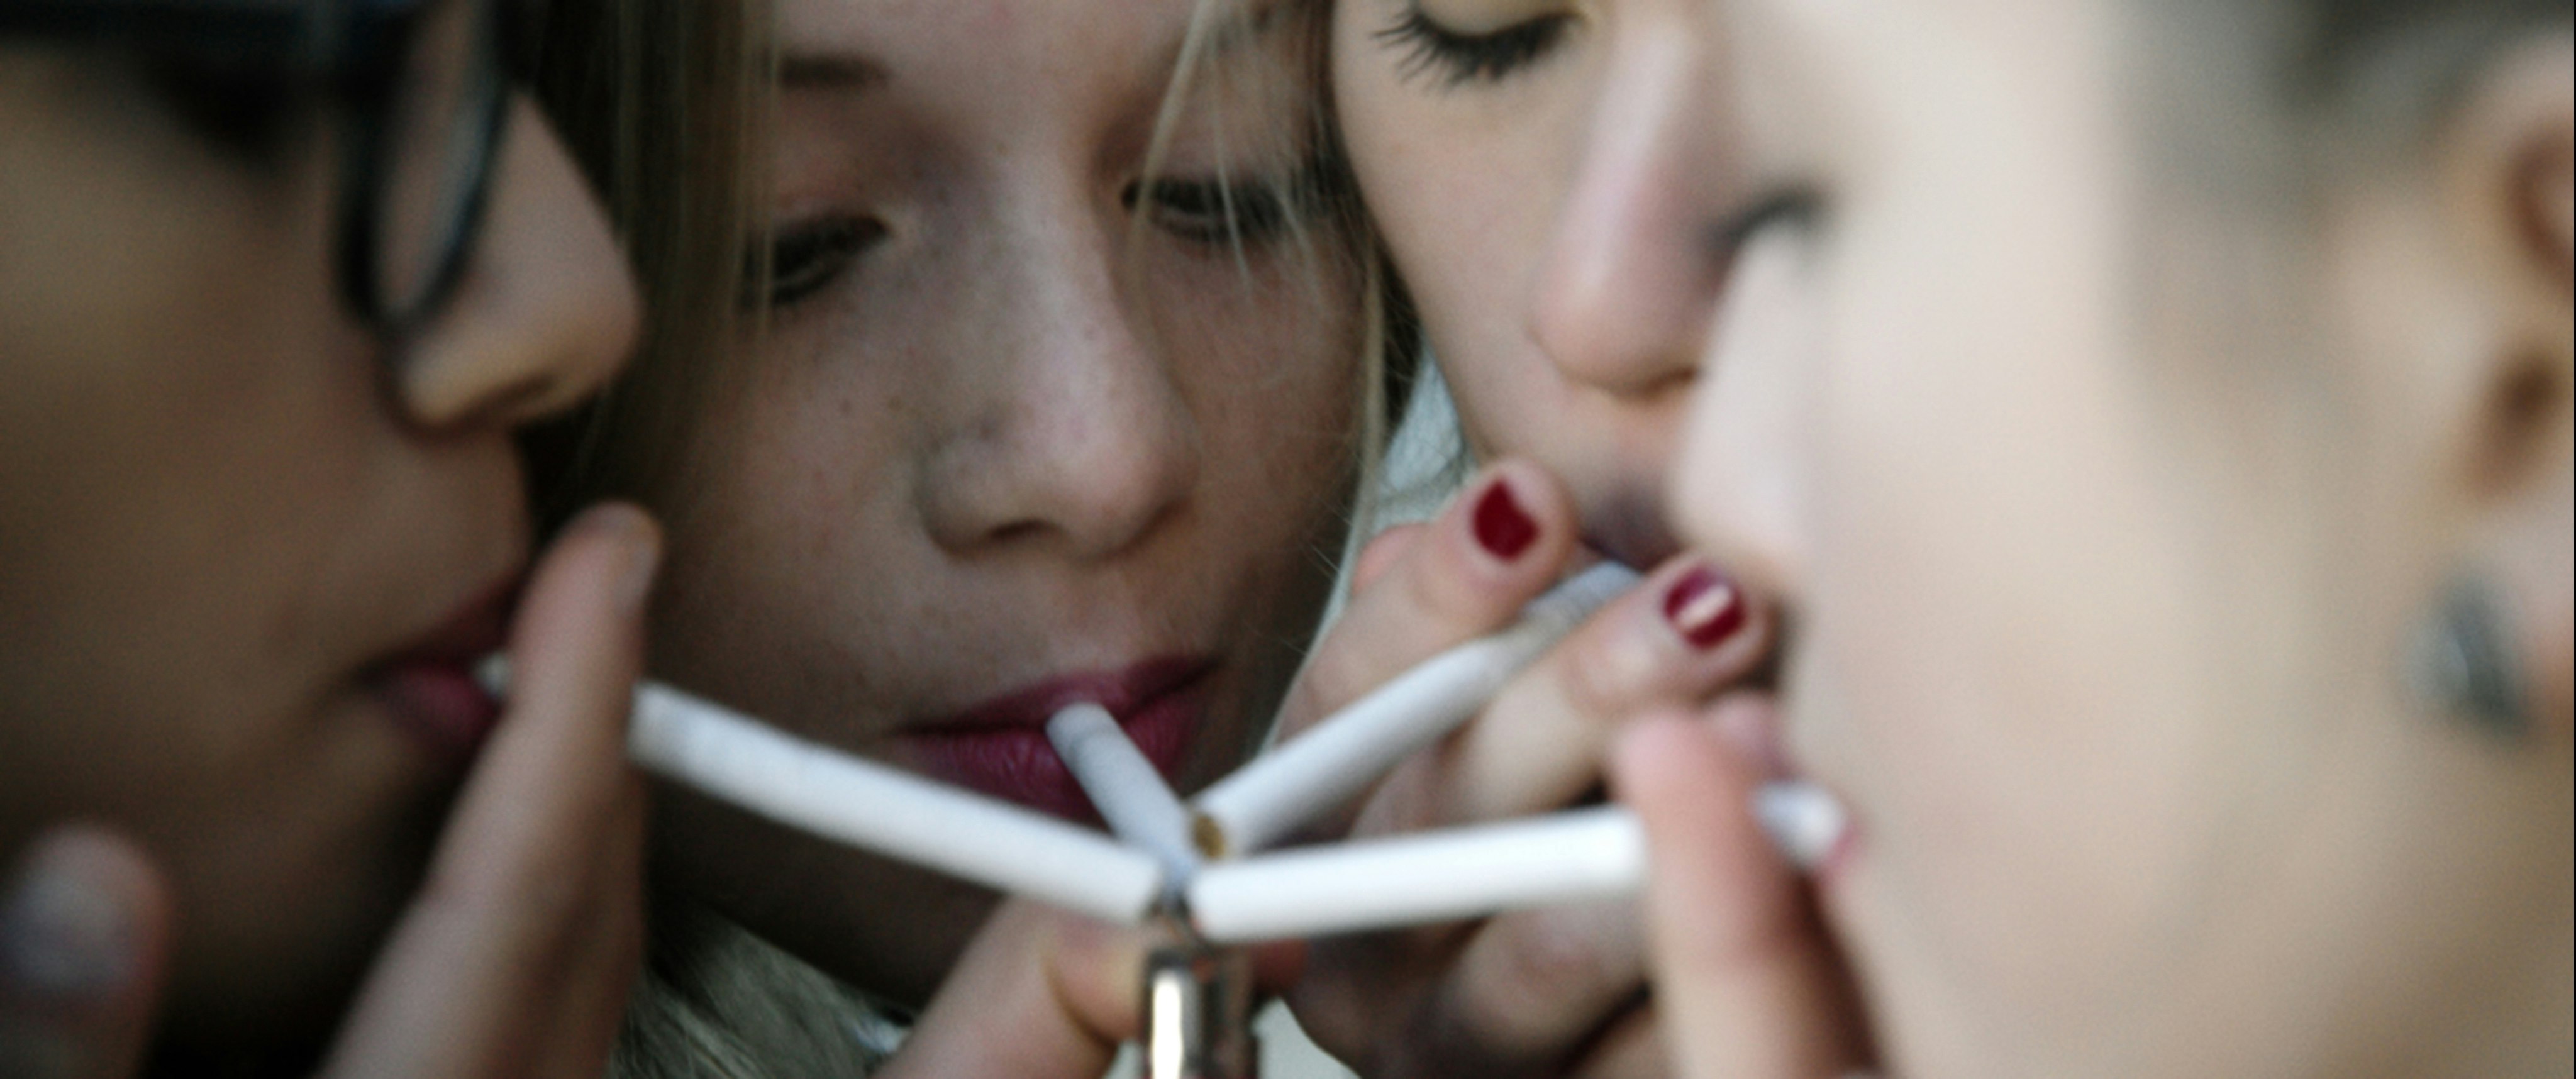 Amateur Smoking Girls